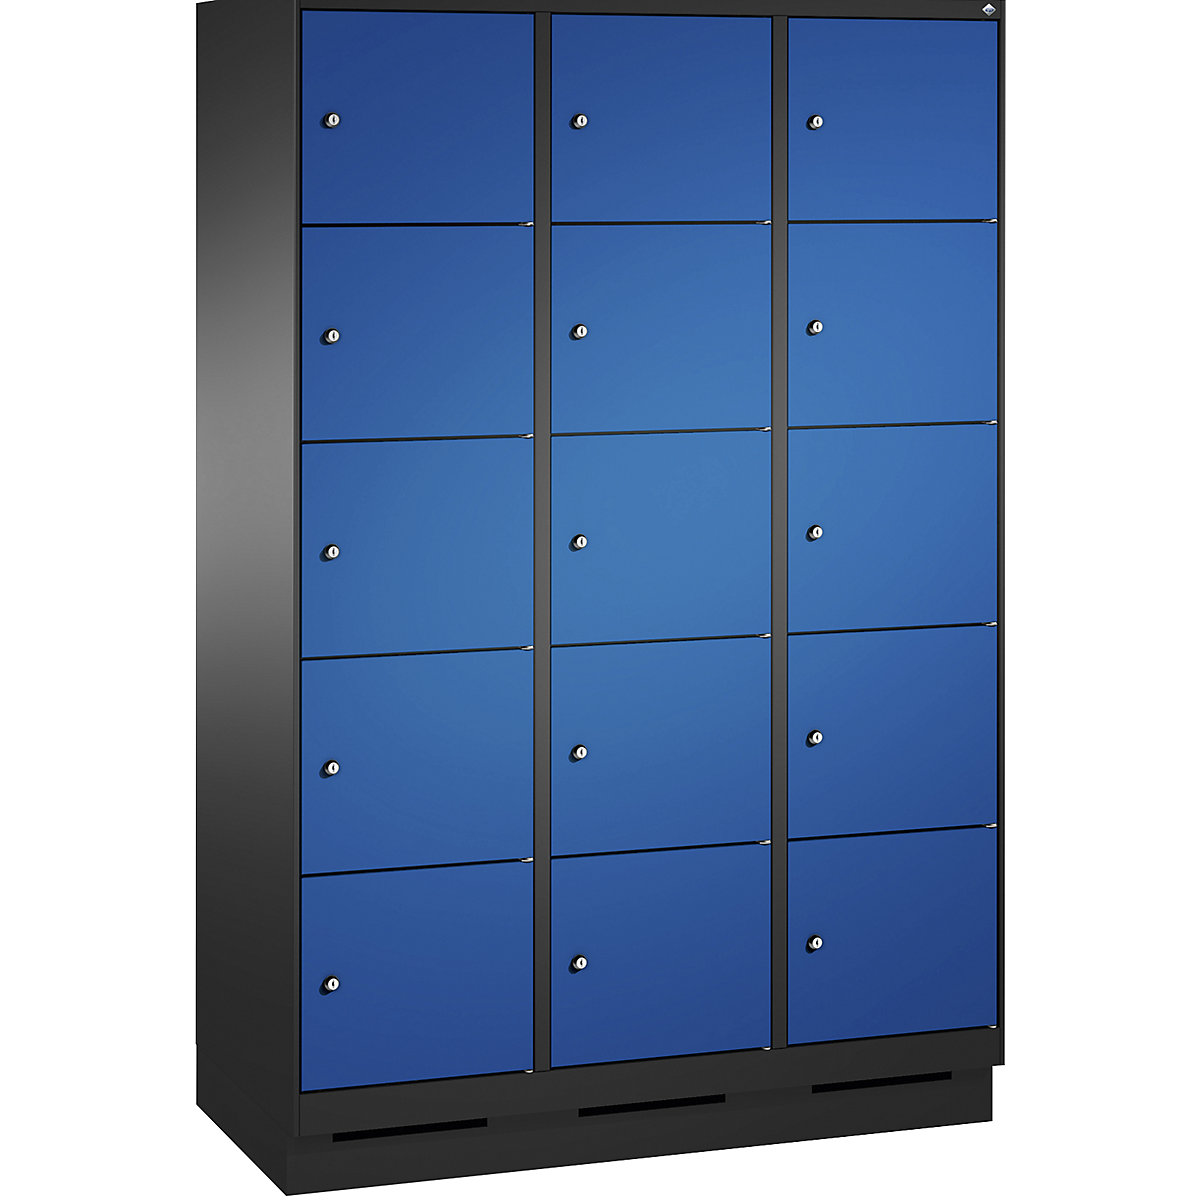 Armoire à casiers sur socle EVOLO – C+P, 3 compartiments, 5 casiers chacun, largeur compartiments 400 mm, gris noir / bleu gentiane-2